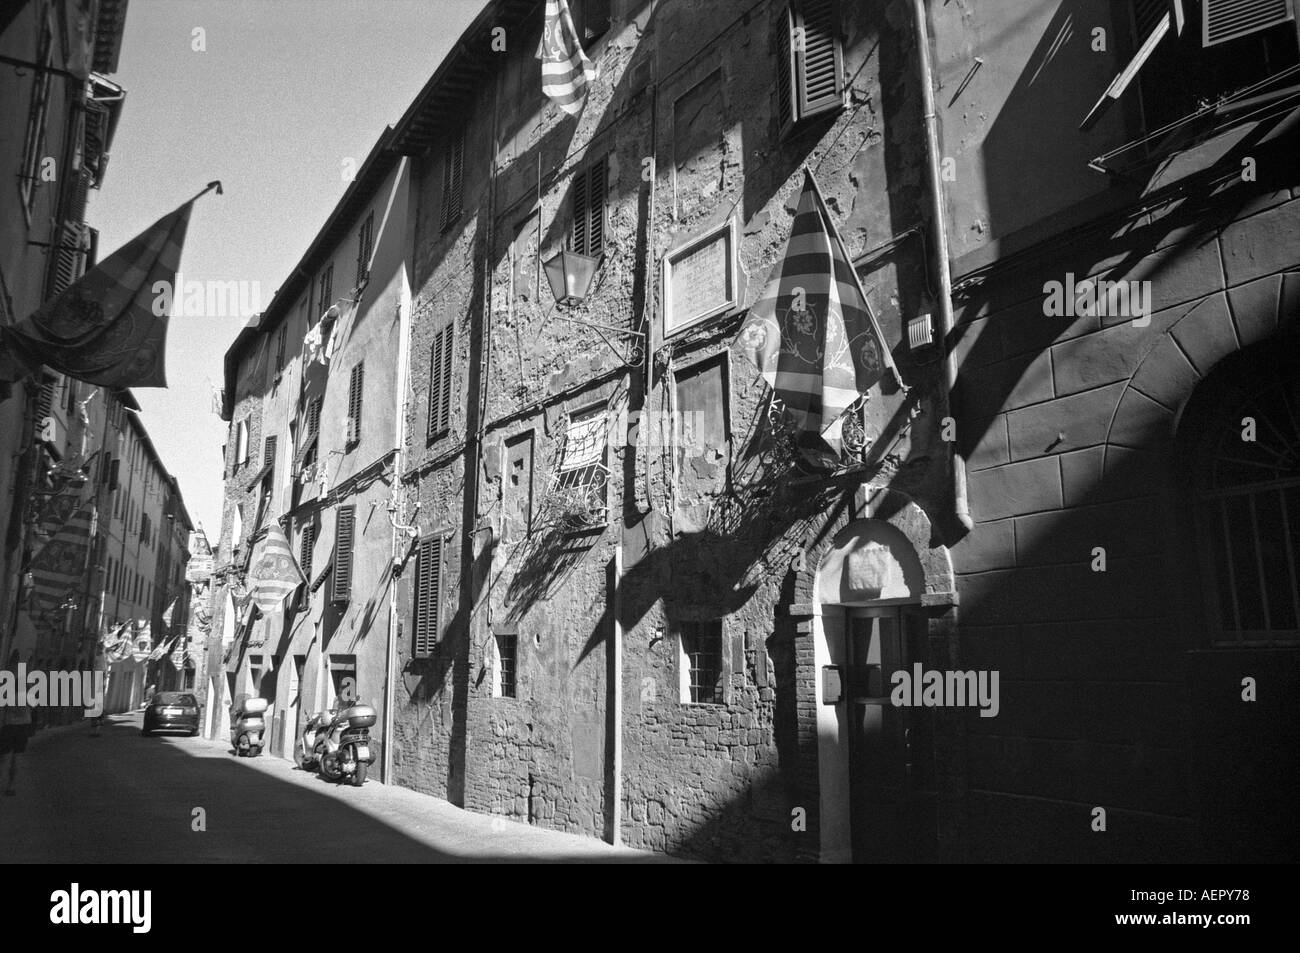 Charakteristischen Blick auf Seitenstraße UNESCO World Heritage Site Siena Toskana Toscana Italien Italia Mitteleuropas Stockfoto